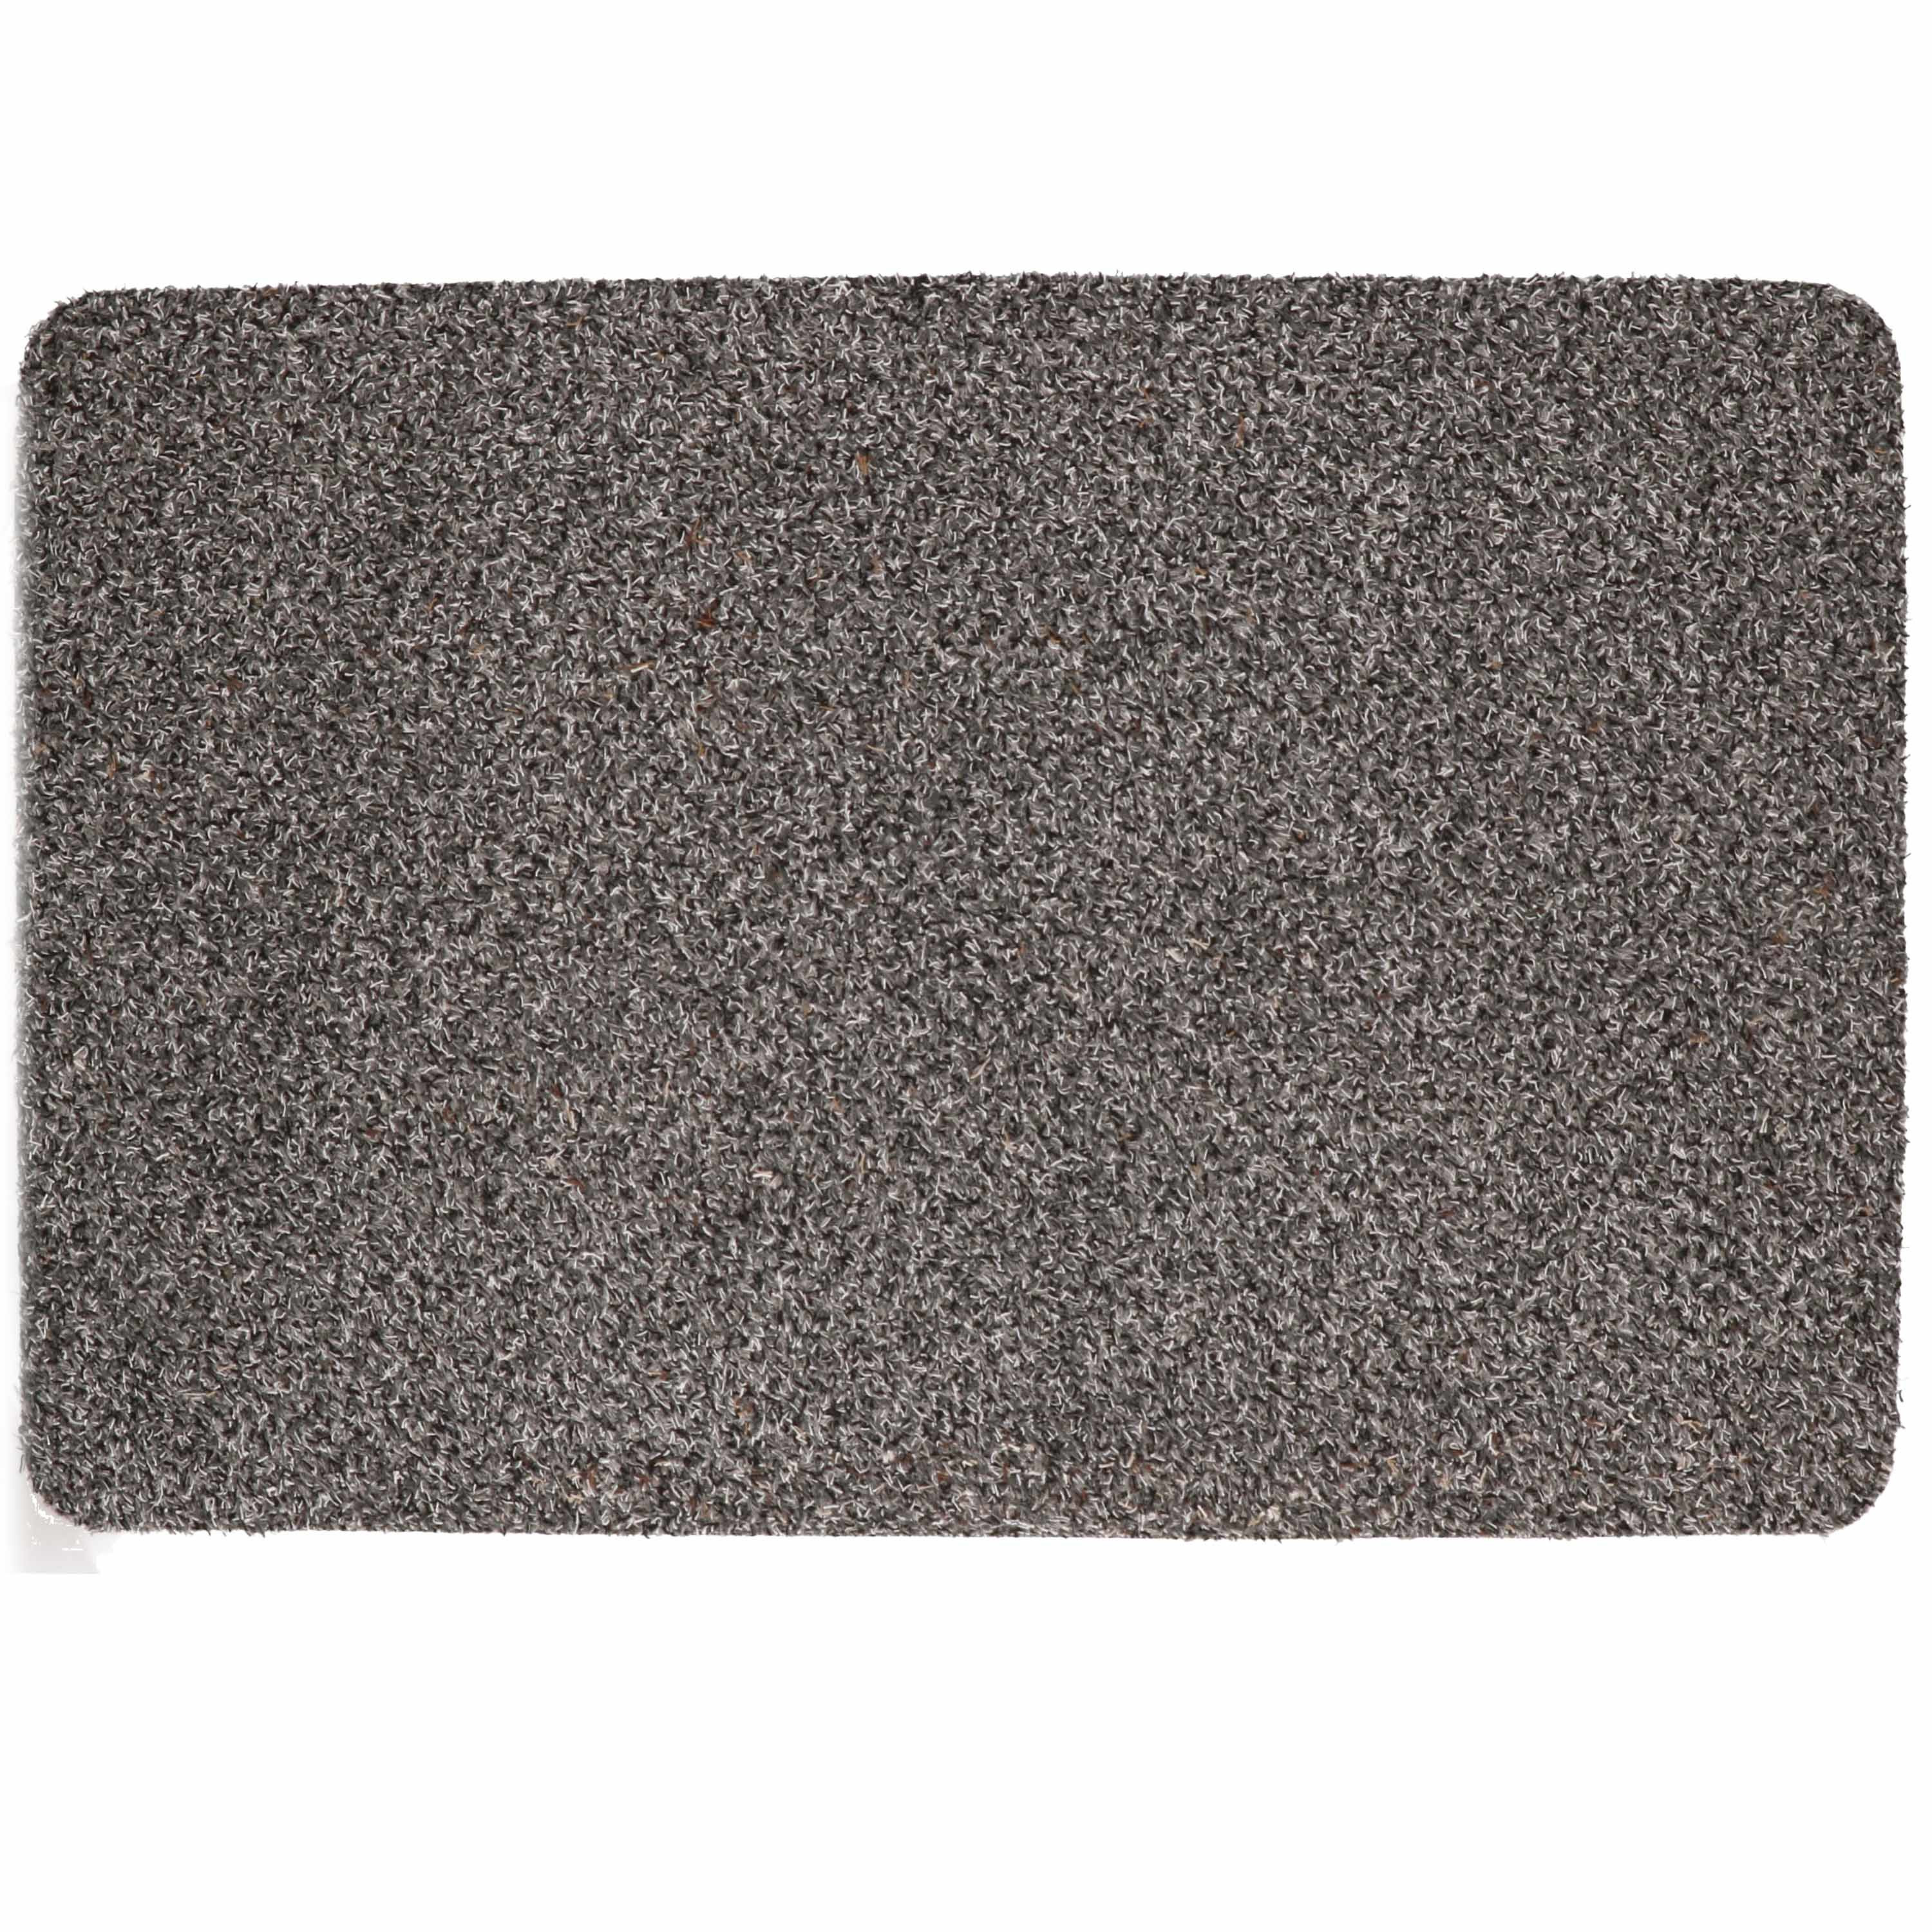 Anti slip deurmat/schoonloopmat pvc grijs extra absorberend 60 x 40 cm voor binnen